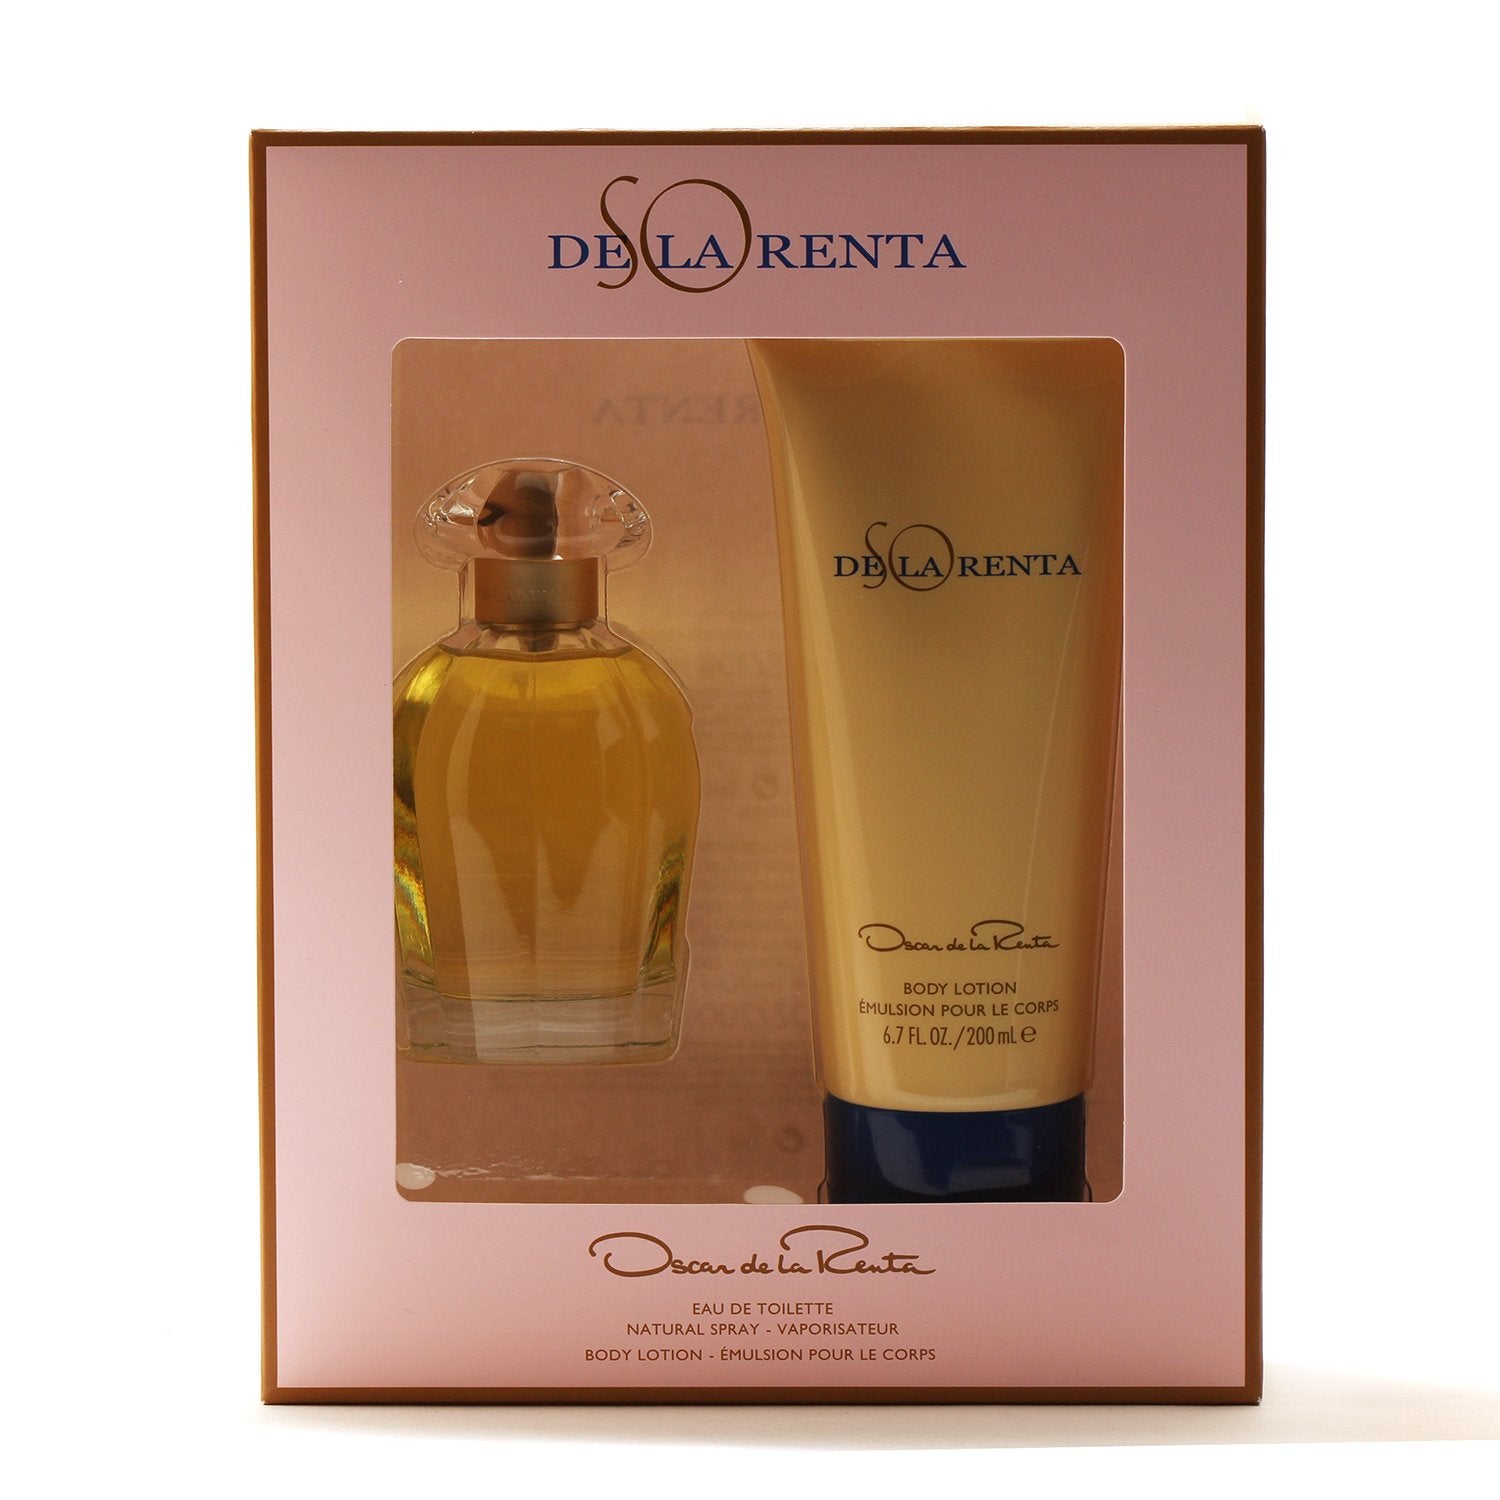 Perfume Sets - SO DE LA RENTA FOR WOMEN BY OSCAR DE LA RENTA - GIFT SET